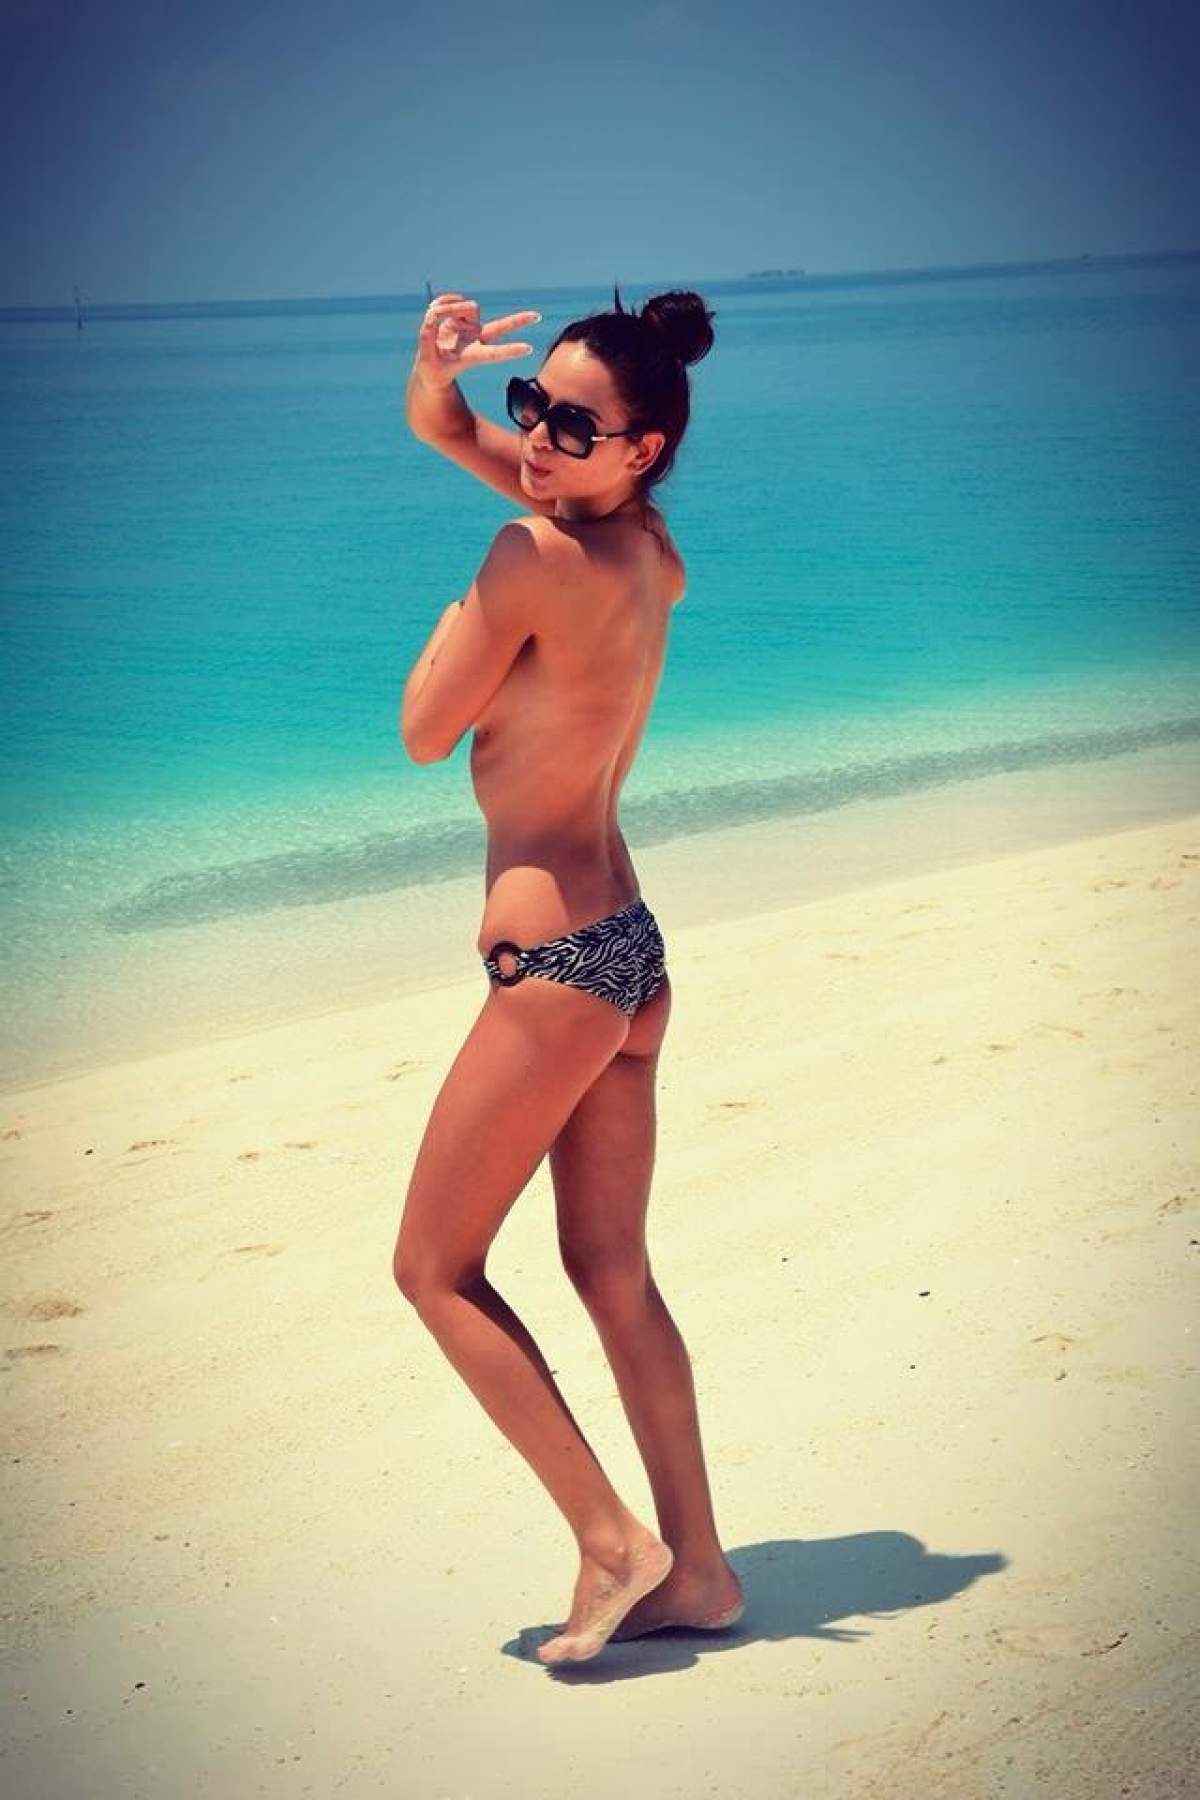 Paula Minginer arată tot pe o plajă din Maldive! Vei rămâne cu gura căscată când îi vei vedea sânii apetisanţi!